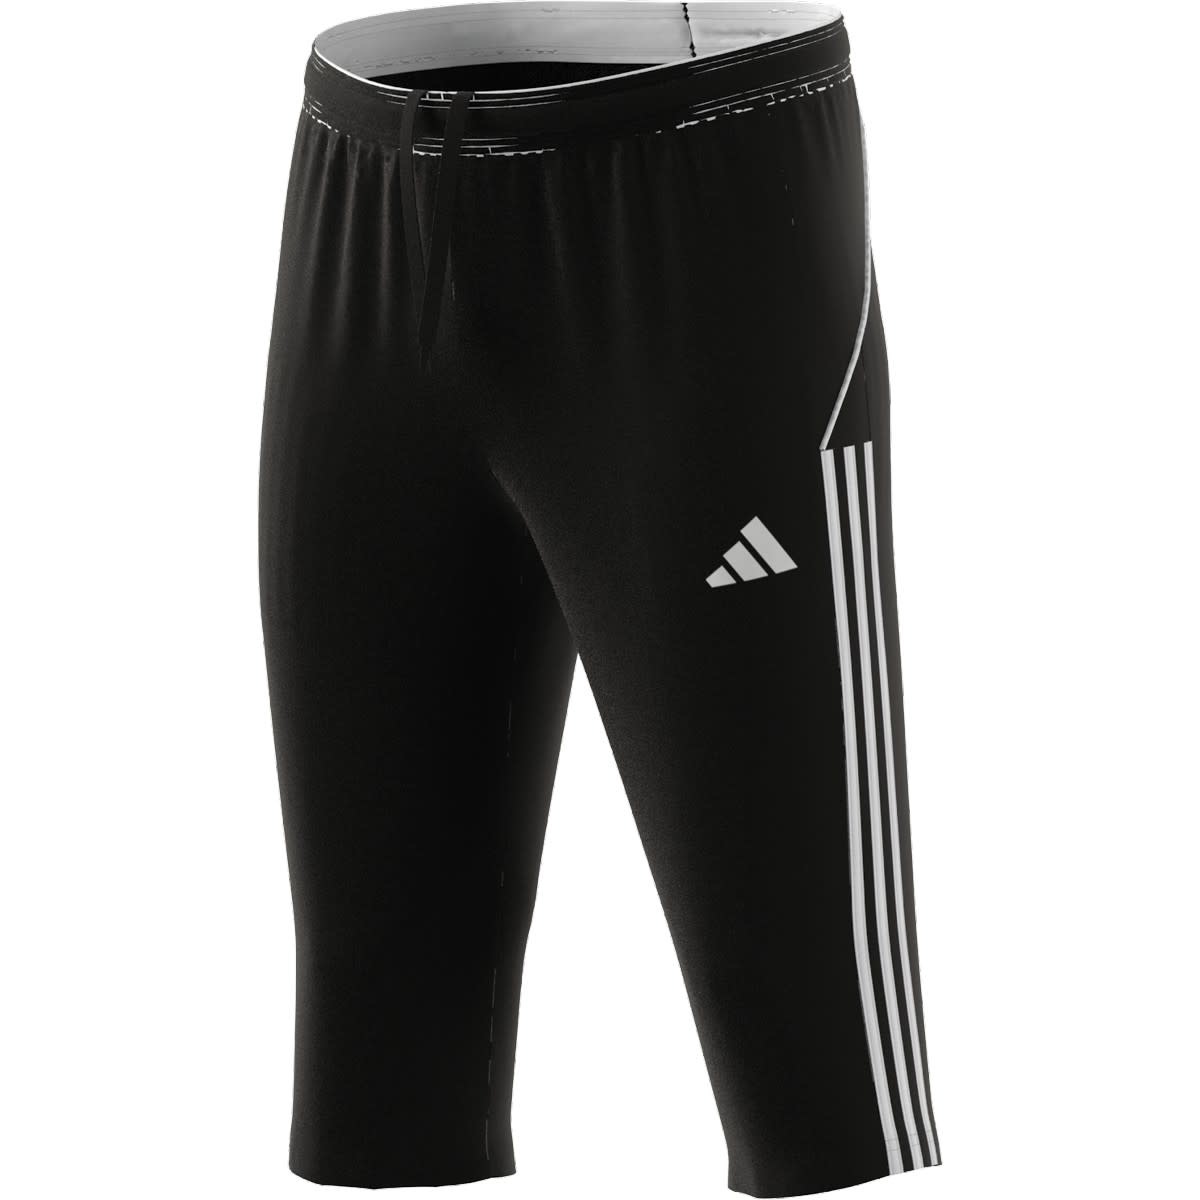 McDavid Sport Compression 3/4 Tight Athletic Pants, Black, Adult Medium -  Walmart.com